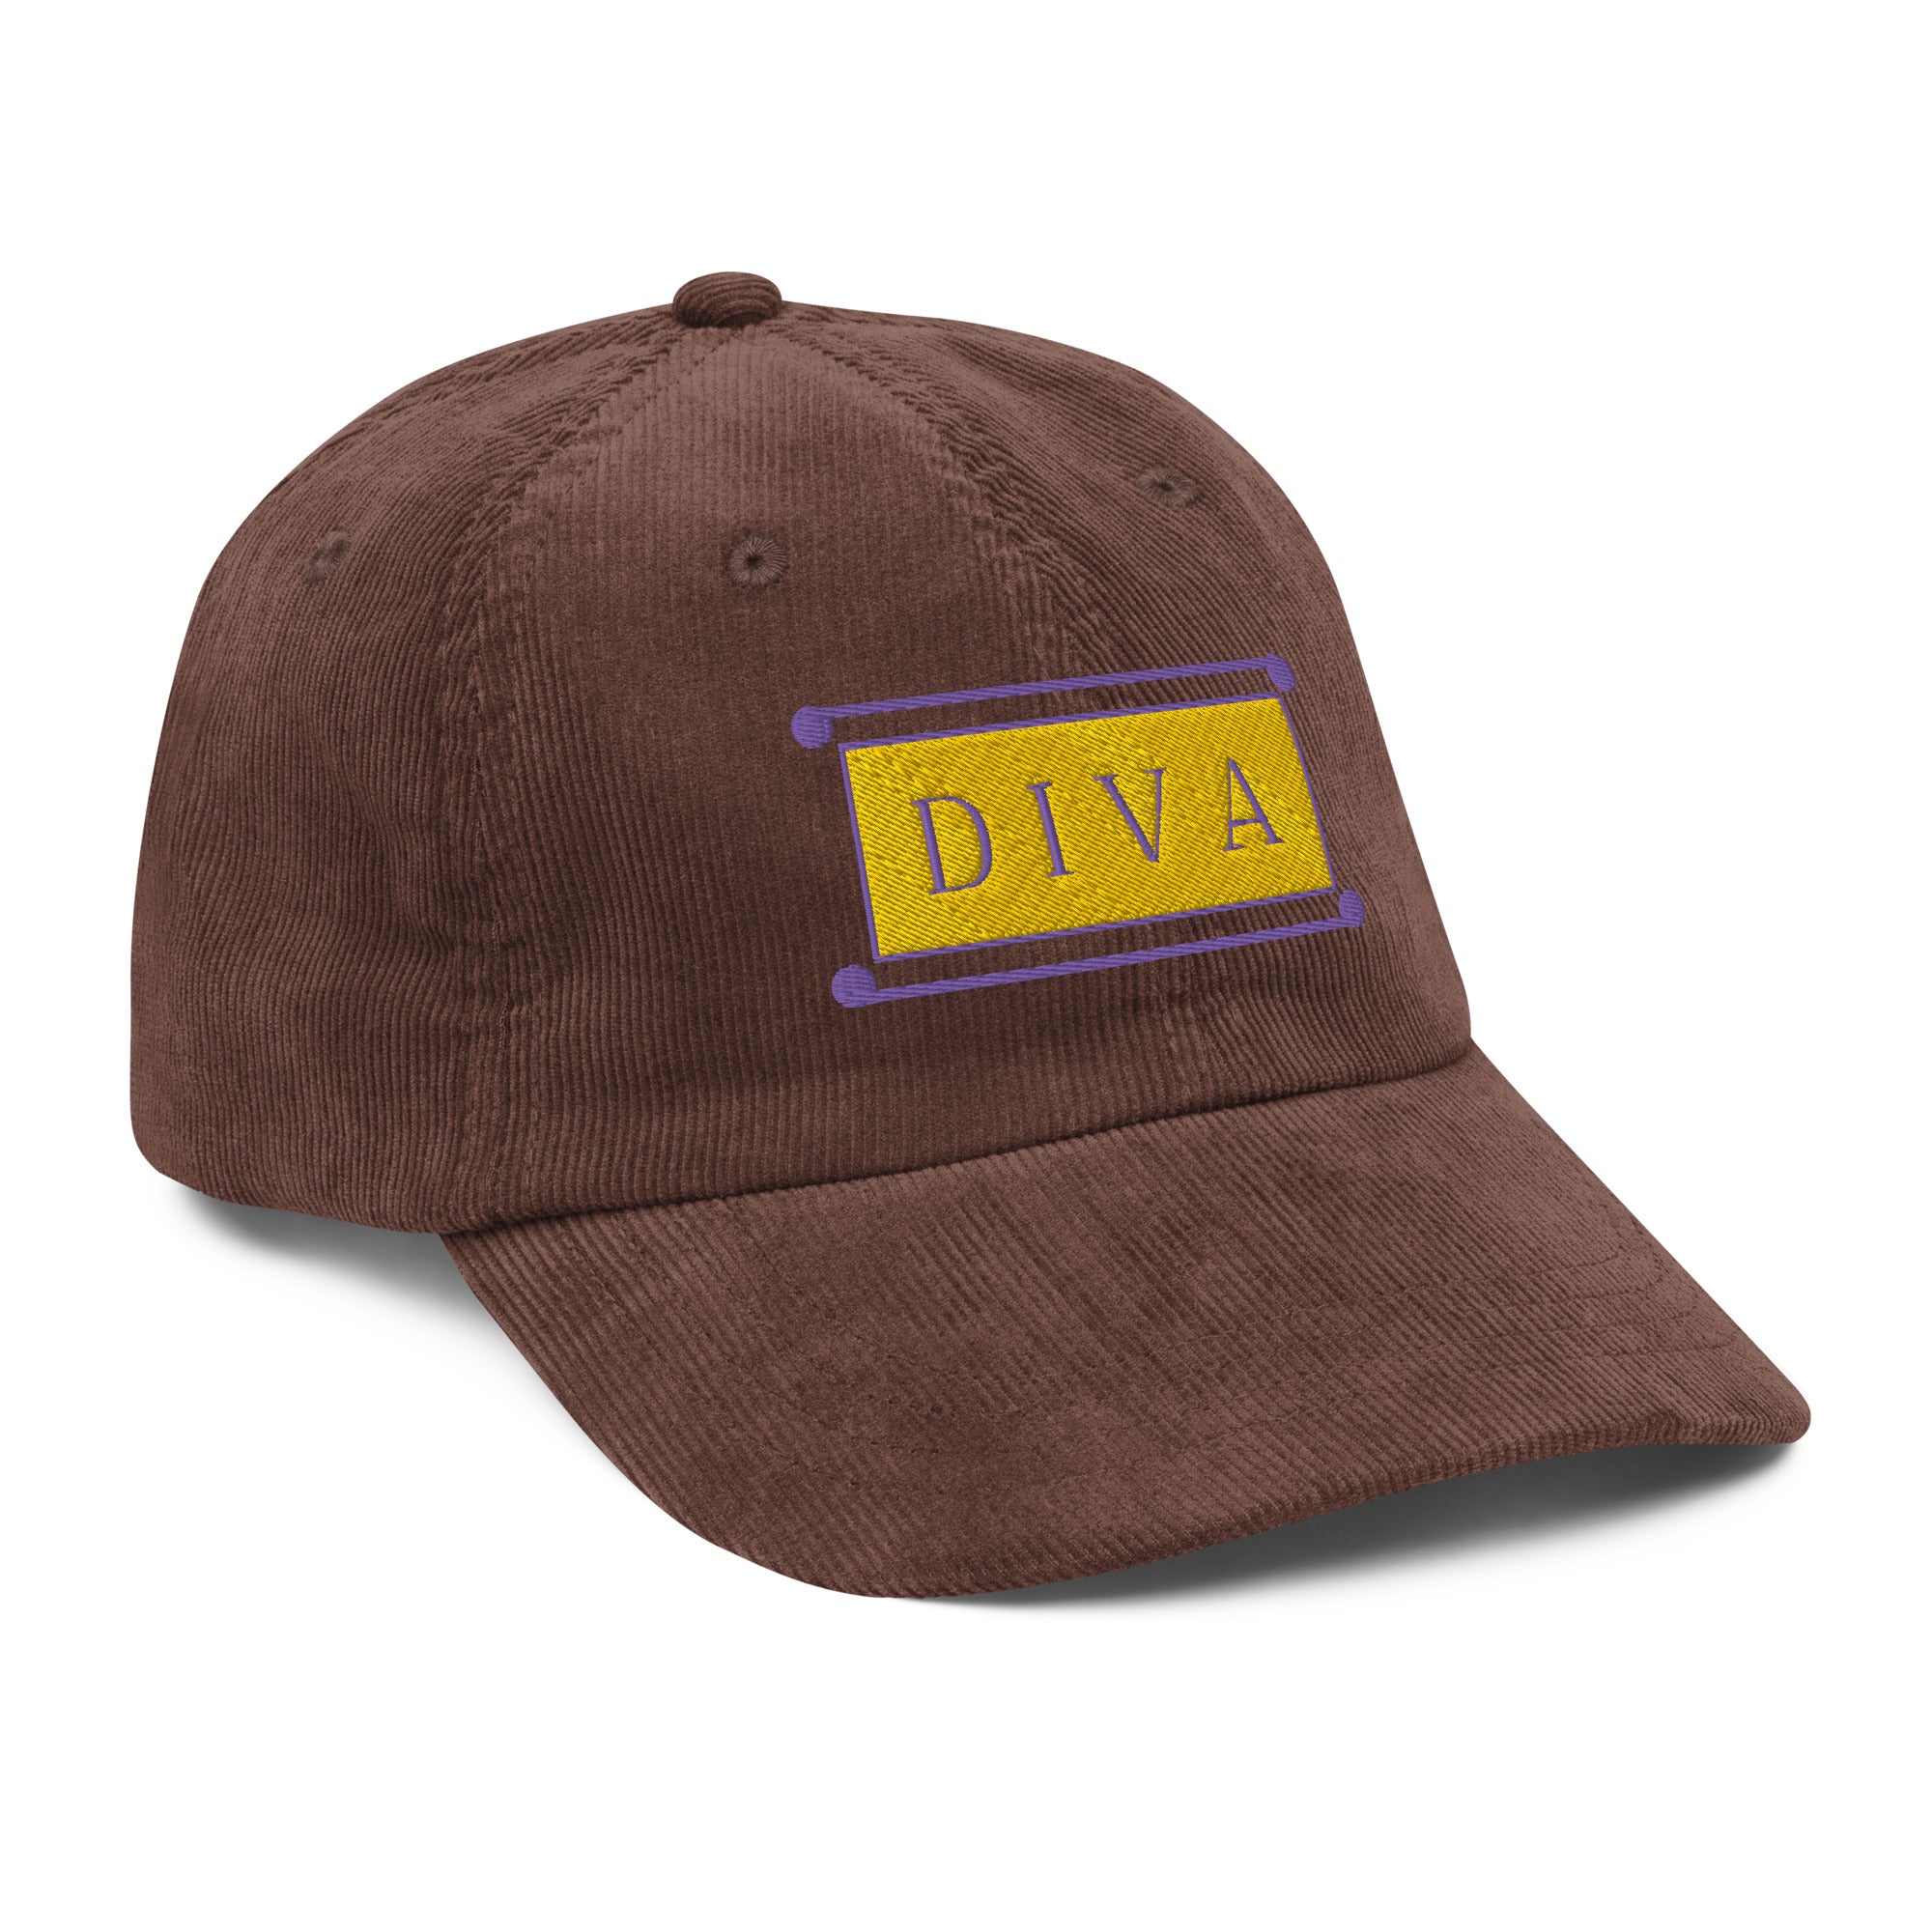 Diva Hat